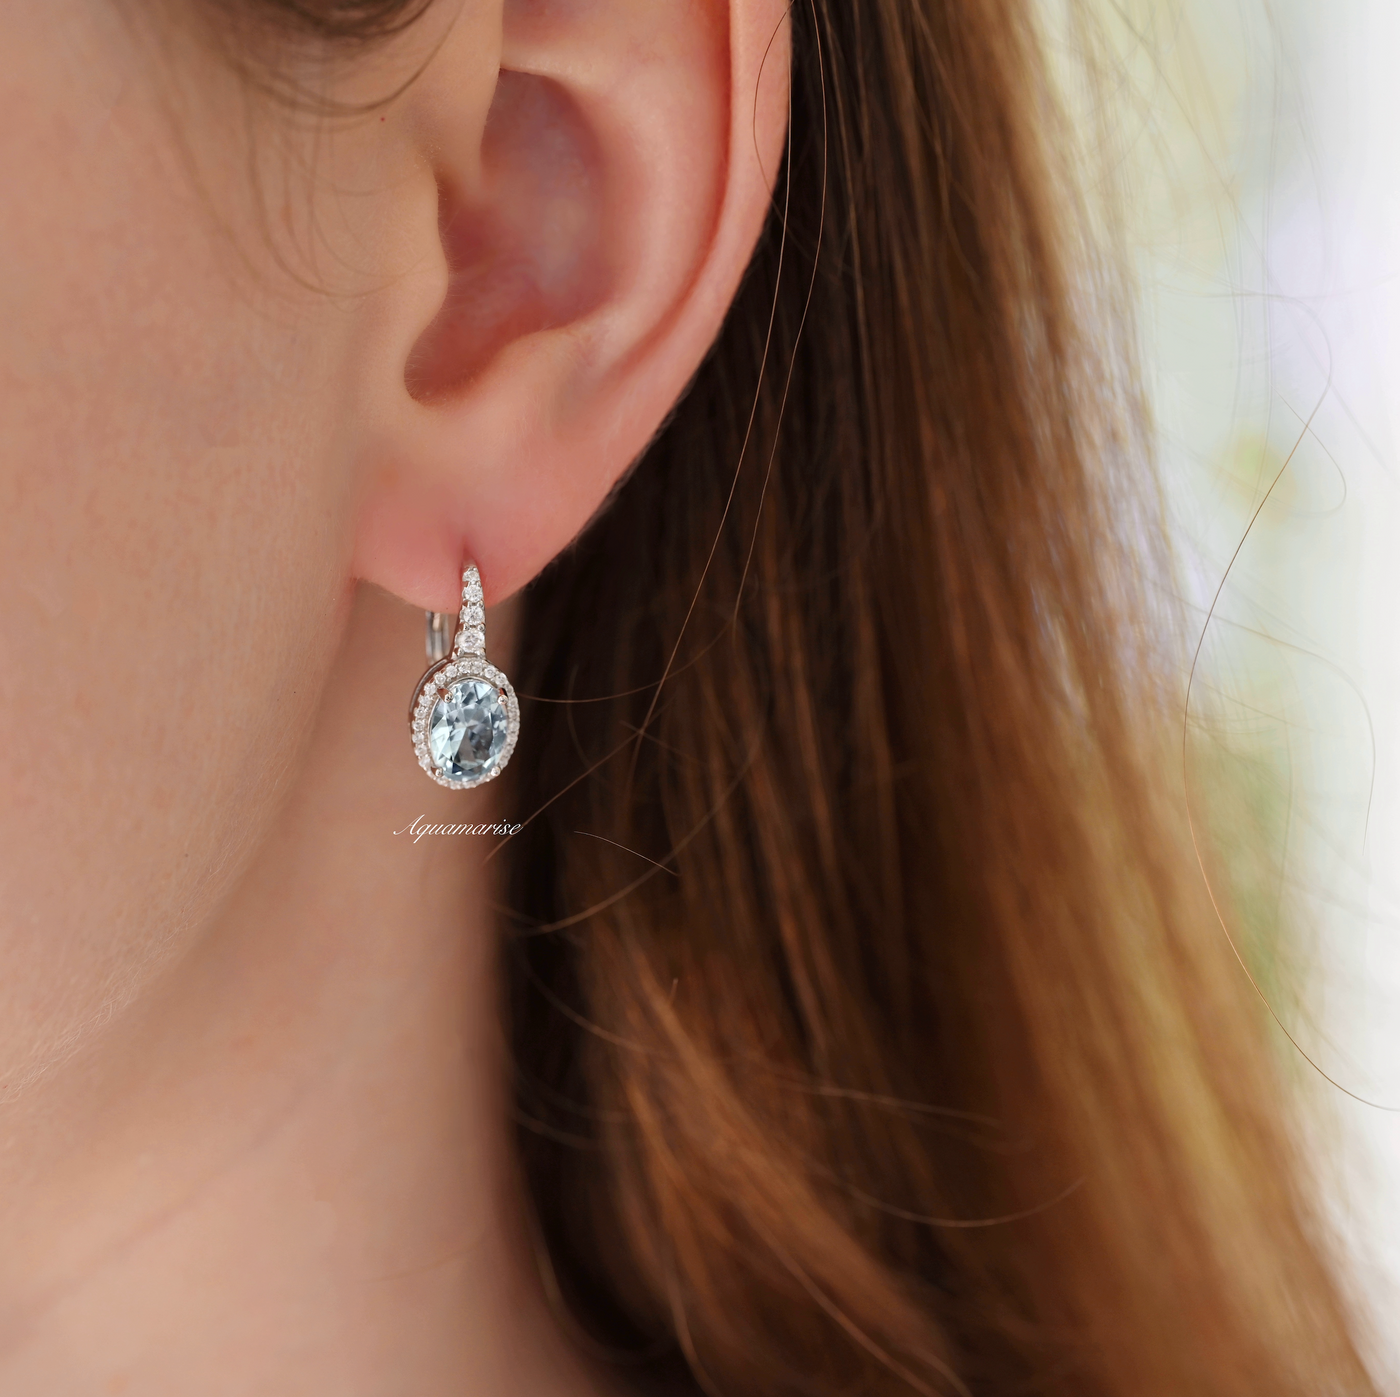 Aquamarine Earrings- Sterling Silver Dangle Drop Oval Halo Earrings